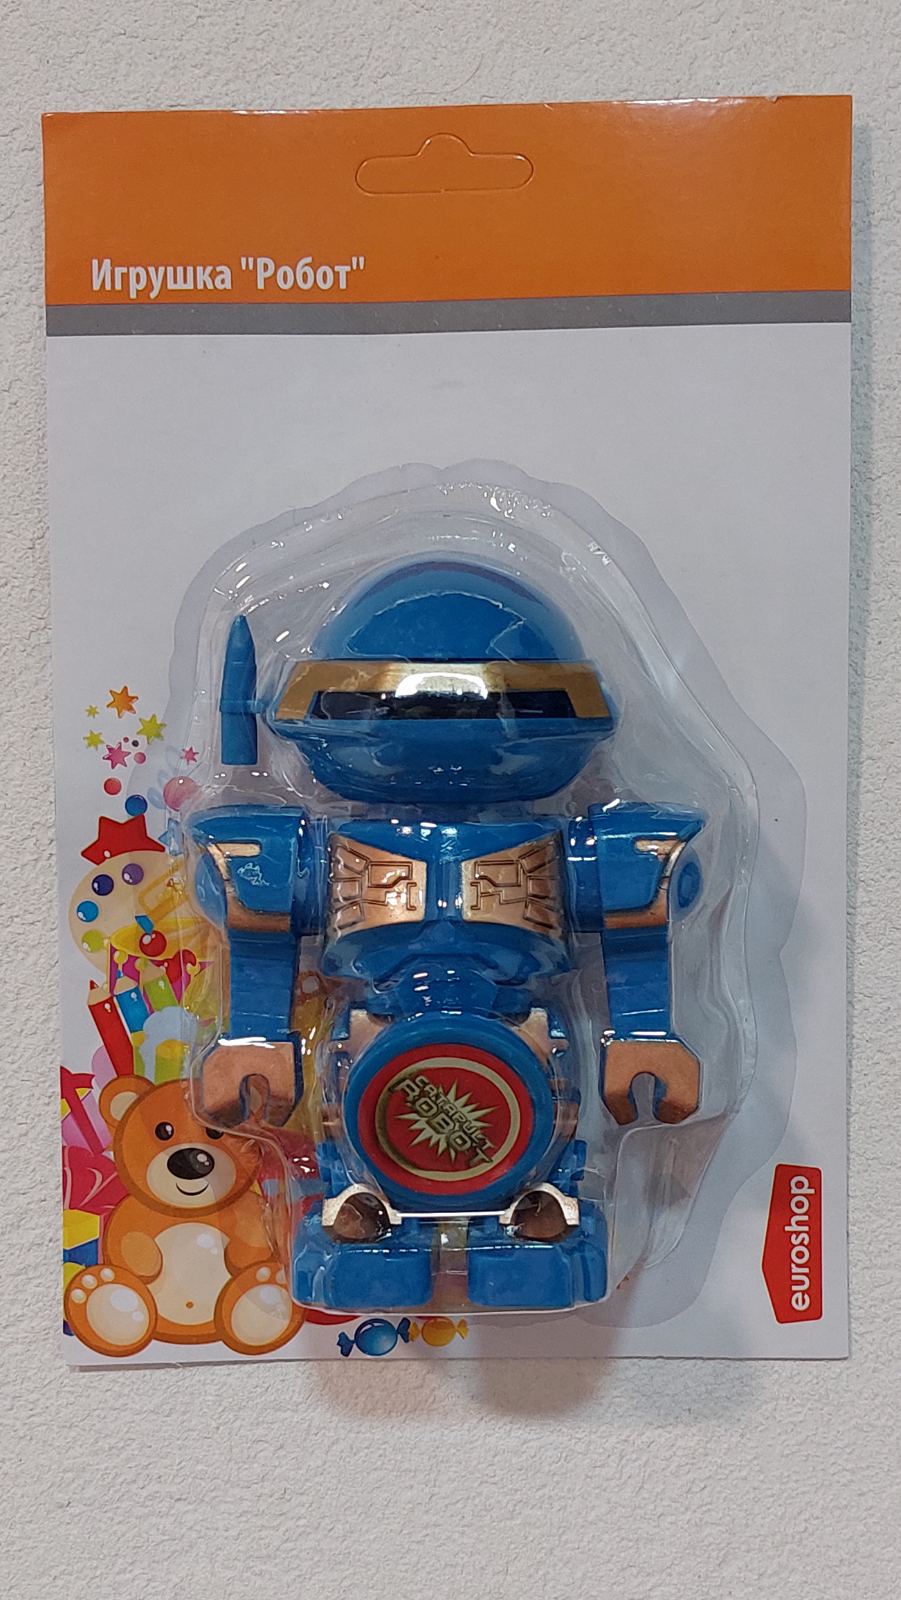 Робот игрушка